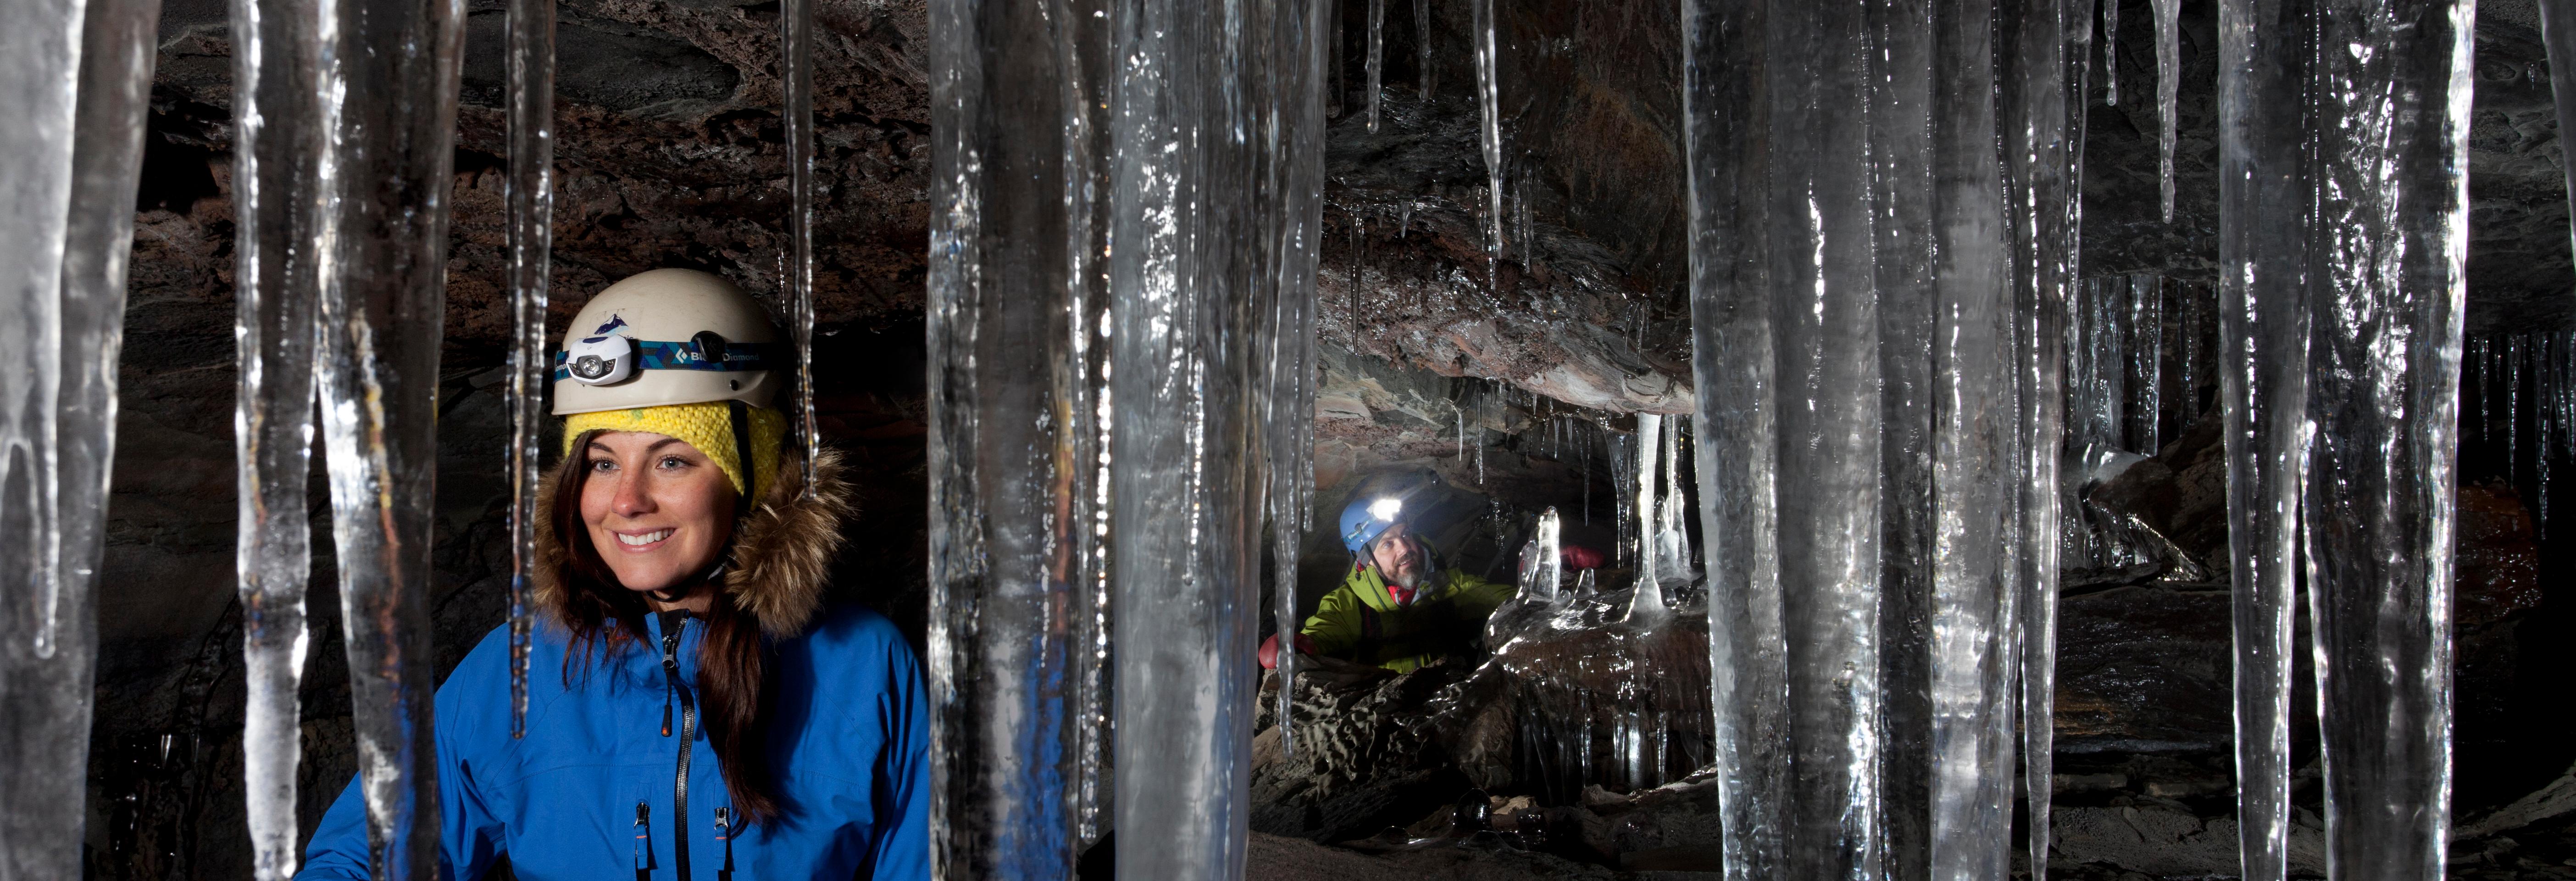 Visite du tunnel de lave de Raufarholshellir – à 30min de Reykjavik – transport en option